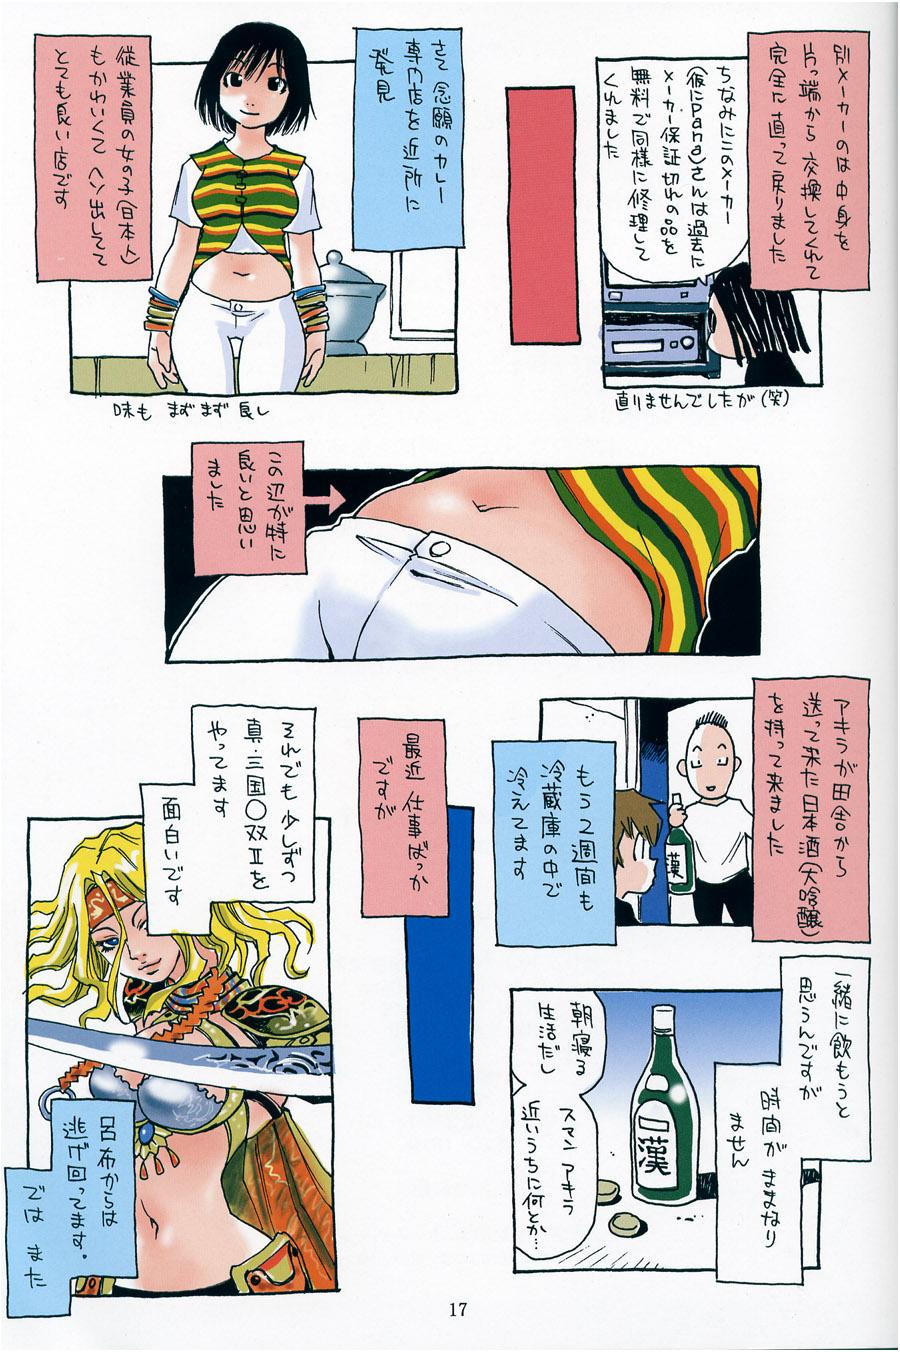 Porno HEAVEN'S DOOR Anime - Page 16